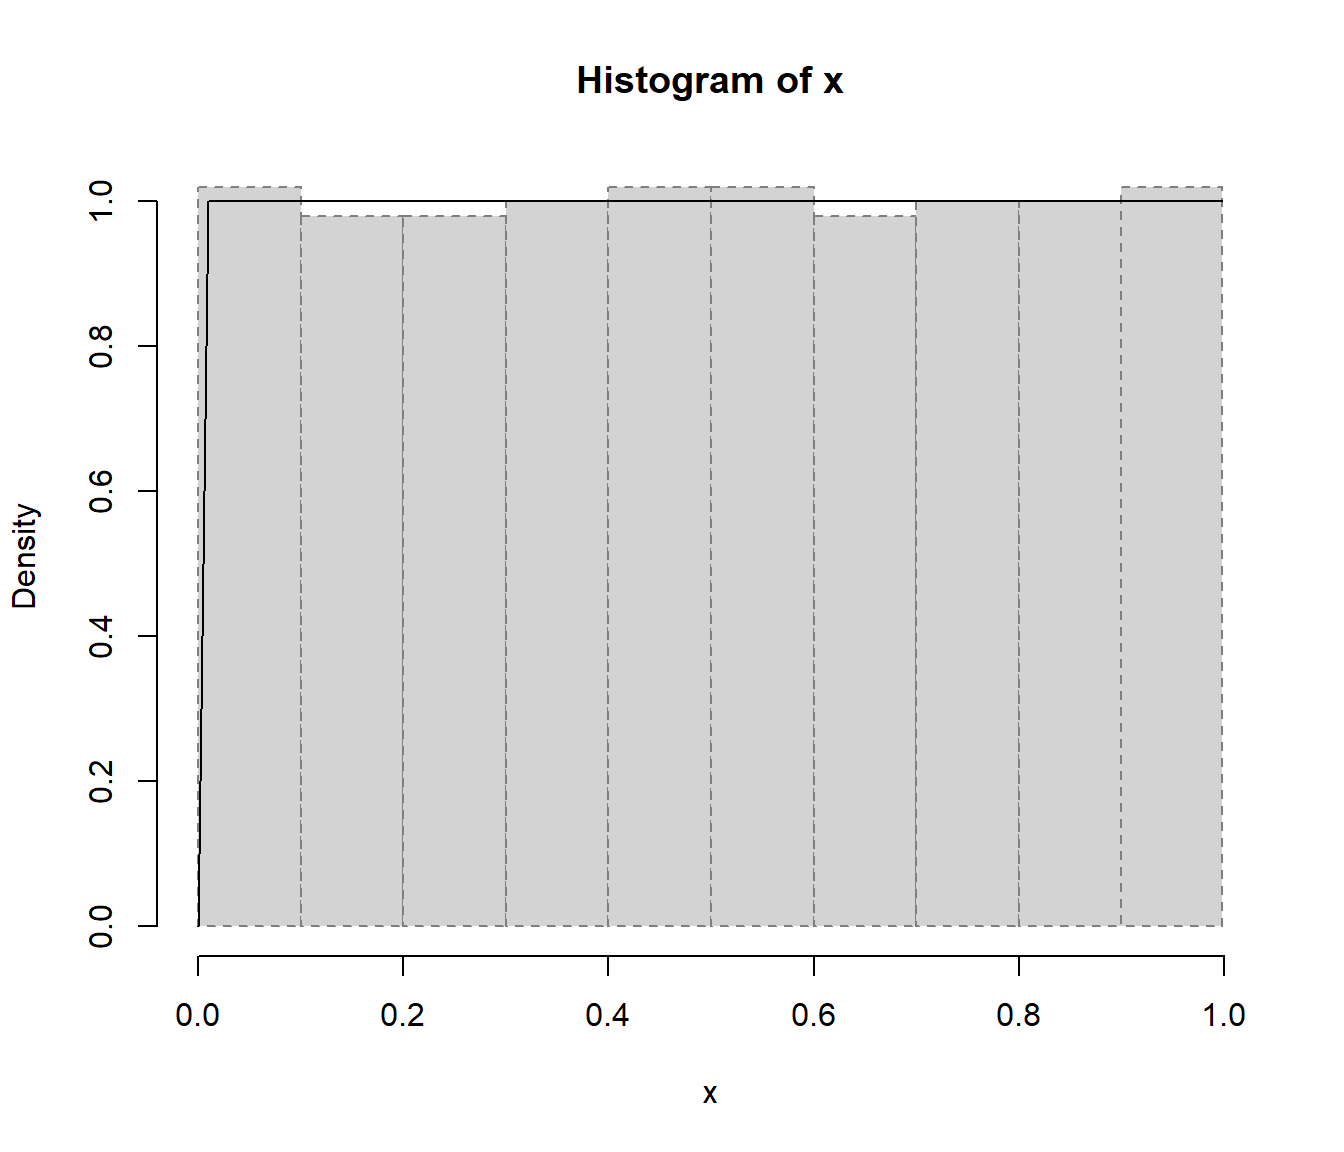 Gráfico resultante de aplicar la función `chisq.cont.test()` comparando el histograma de los valores generados con la densidad uniforme.